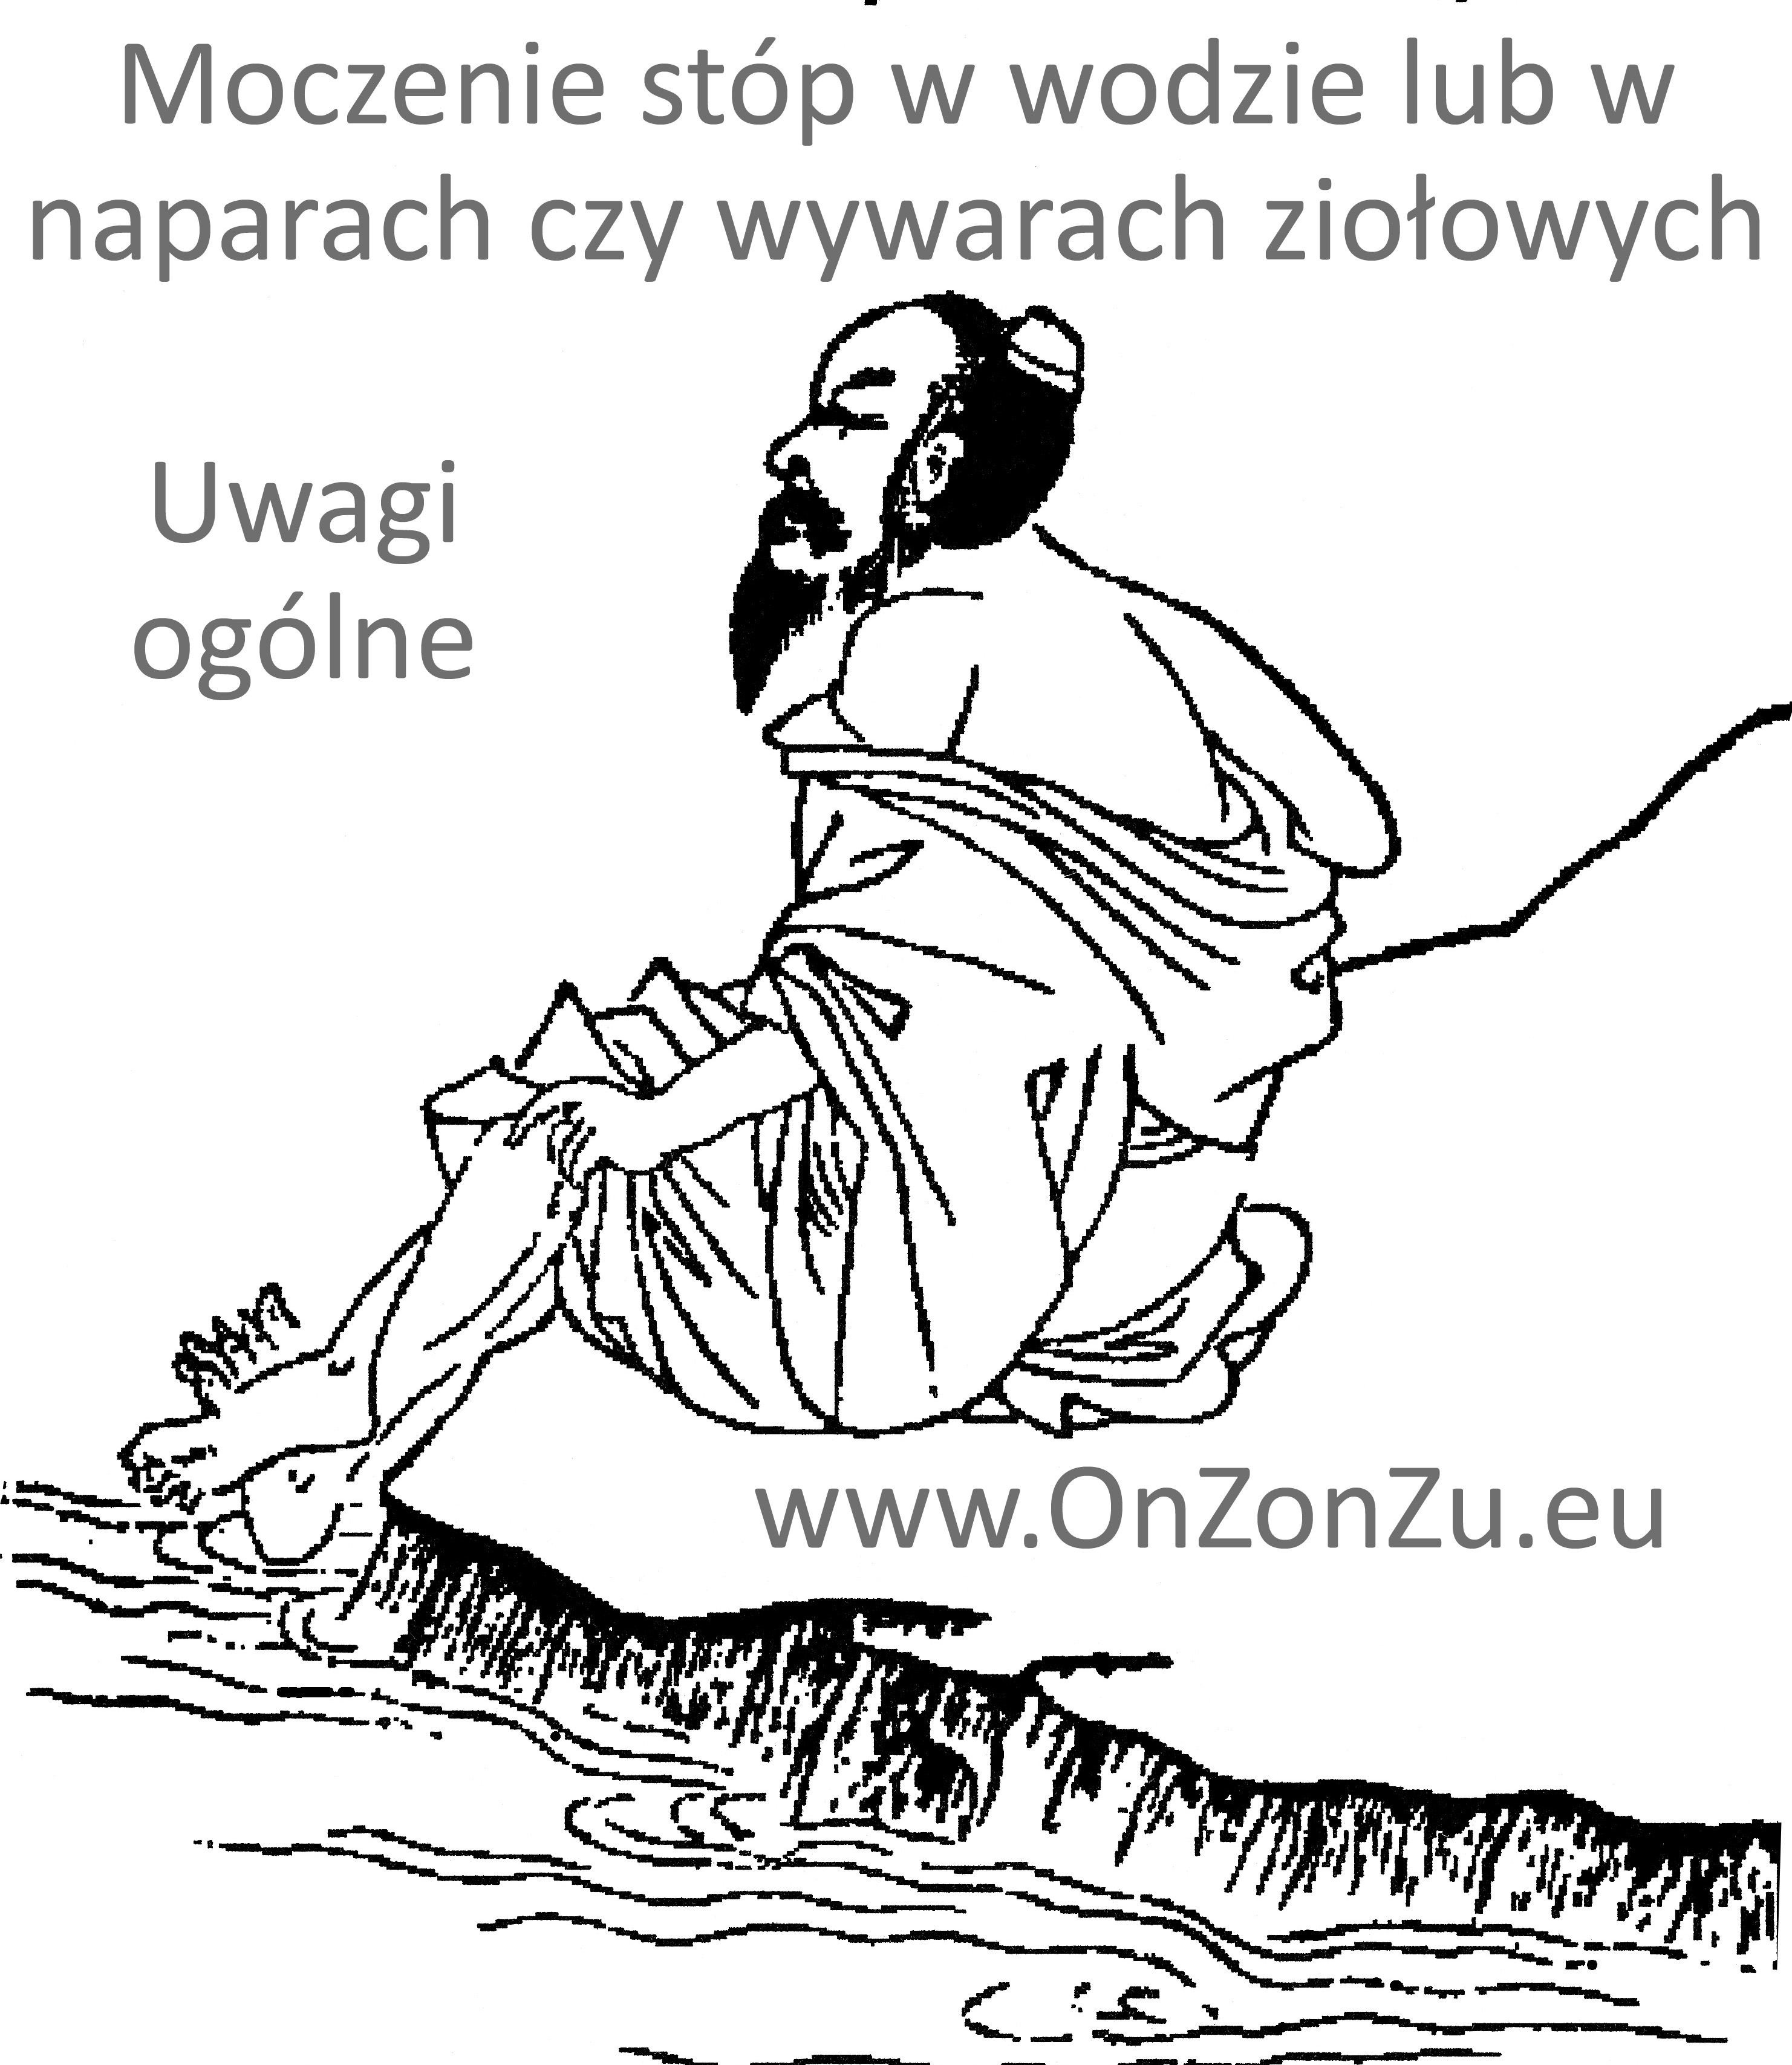 Kurs masażu stóp On Zon Su, Szkolenia refleksologii stóp - Moczenie stóp w wodzie lub w naparach czy wywarach ziołowych - uwagi ogólne Taoista_Siedzacy_nad_woda_1.jpg